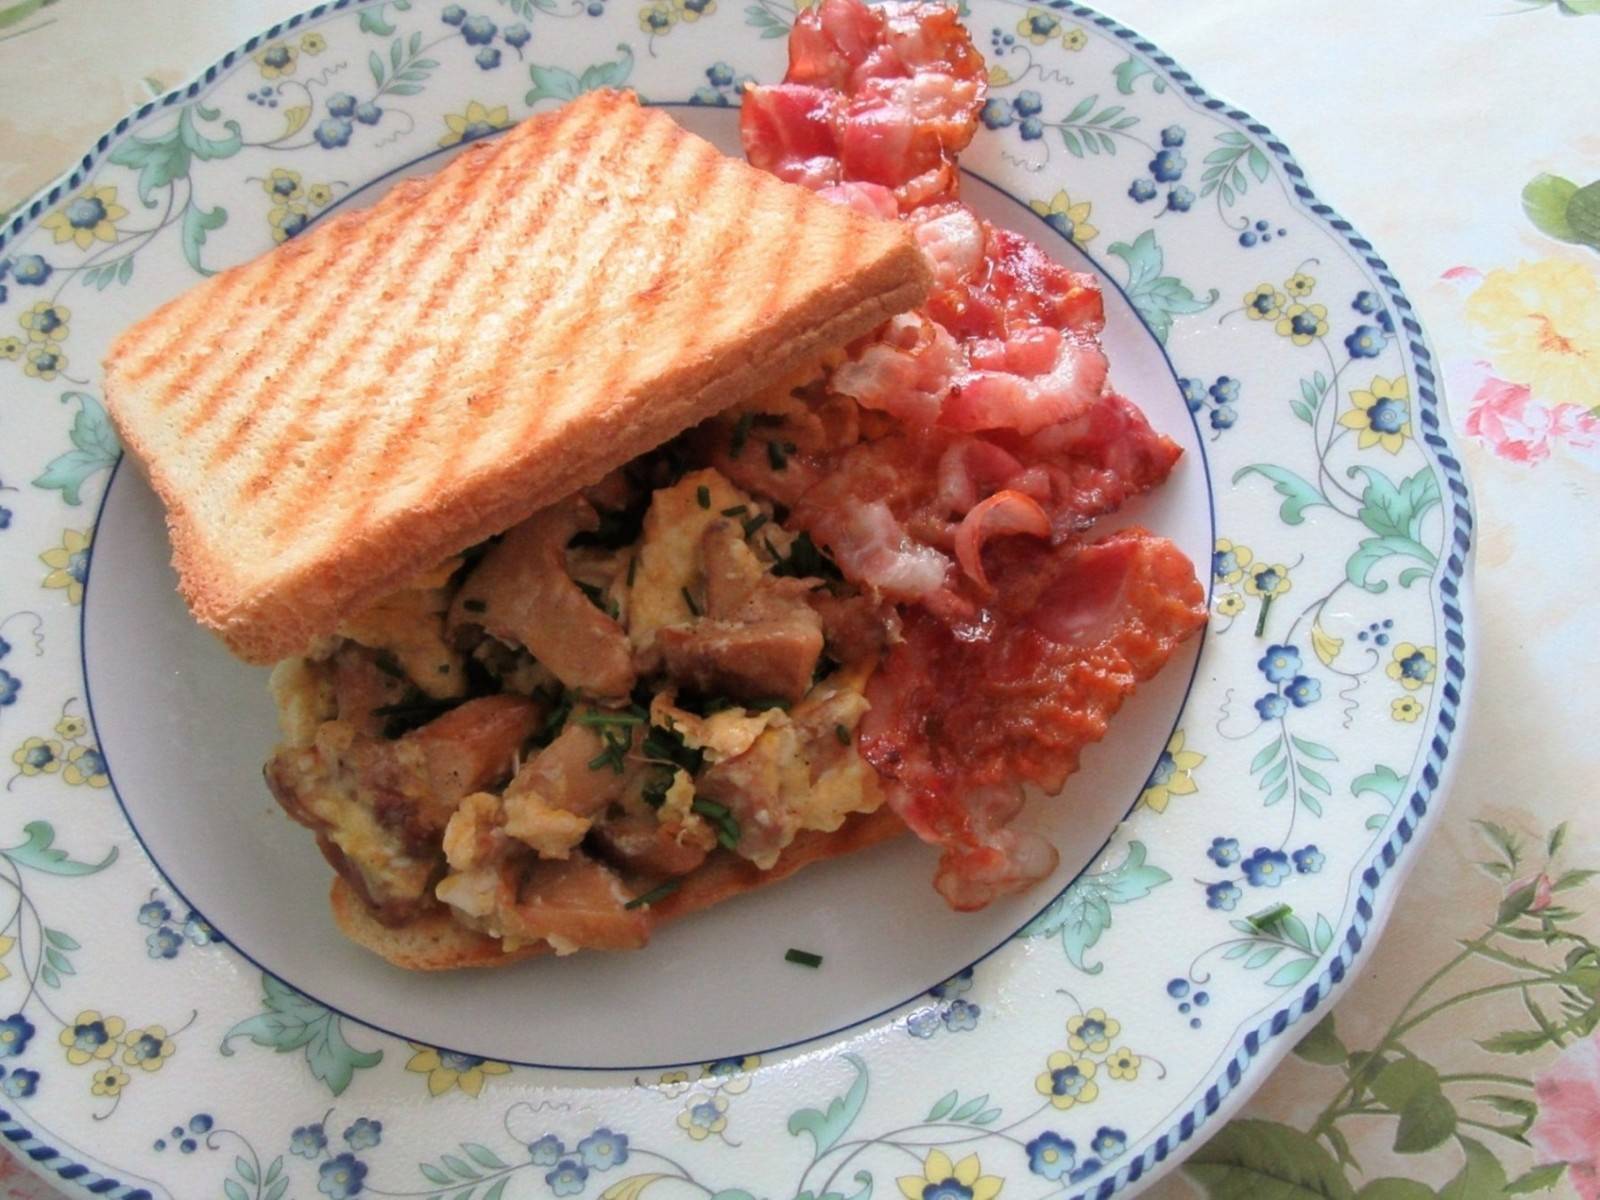 Toast mit Eierschwammerl-Rührei und Speck